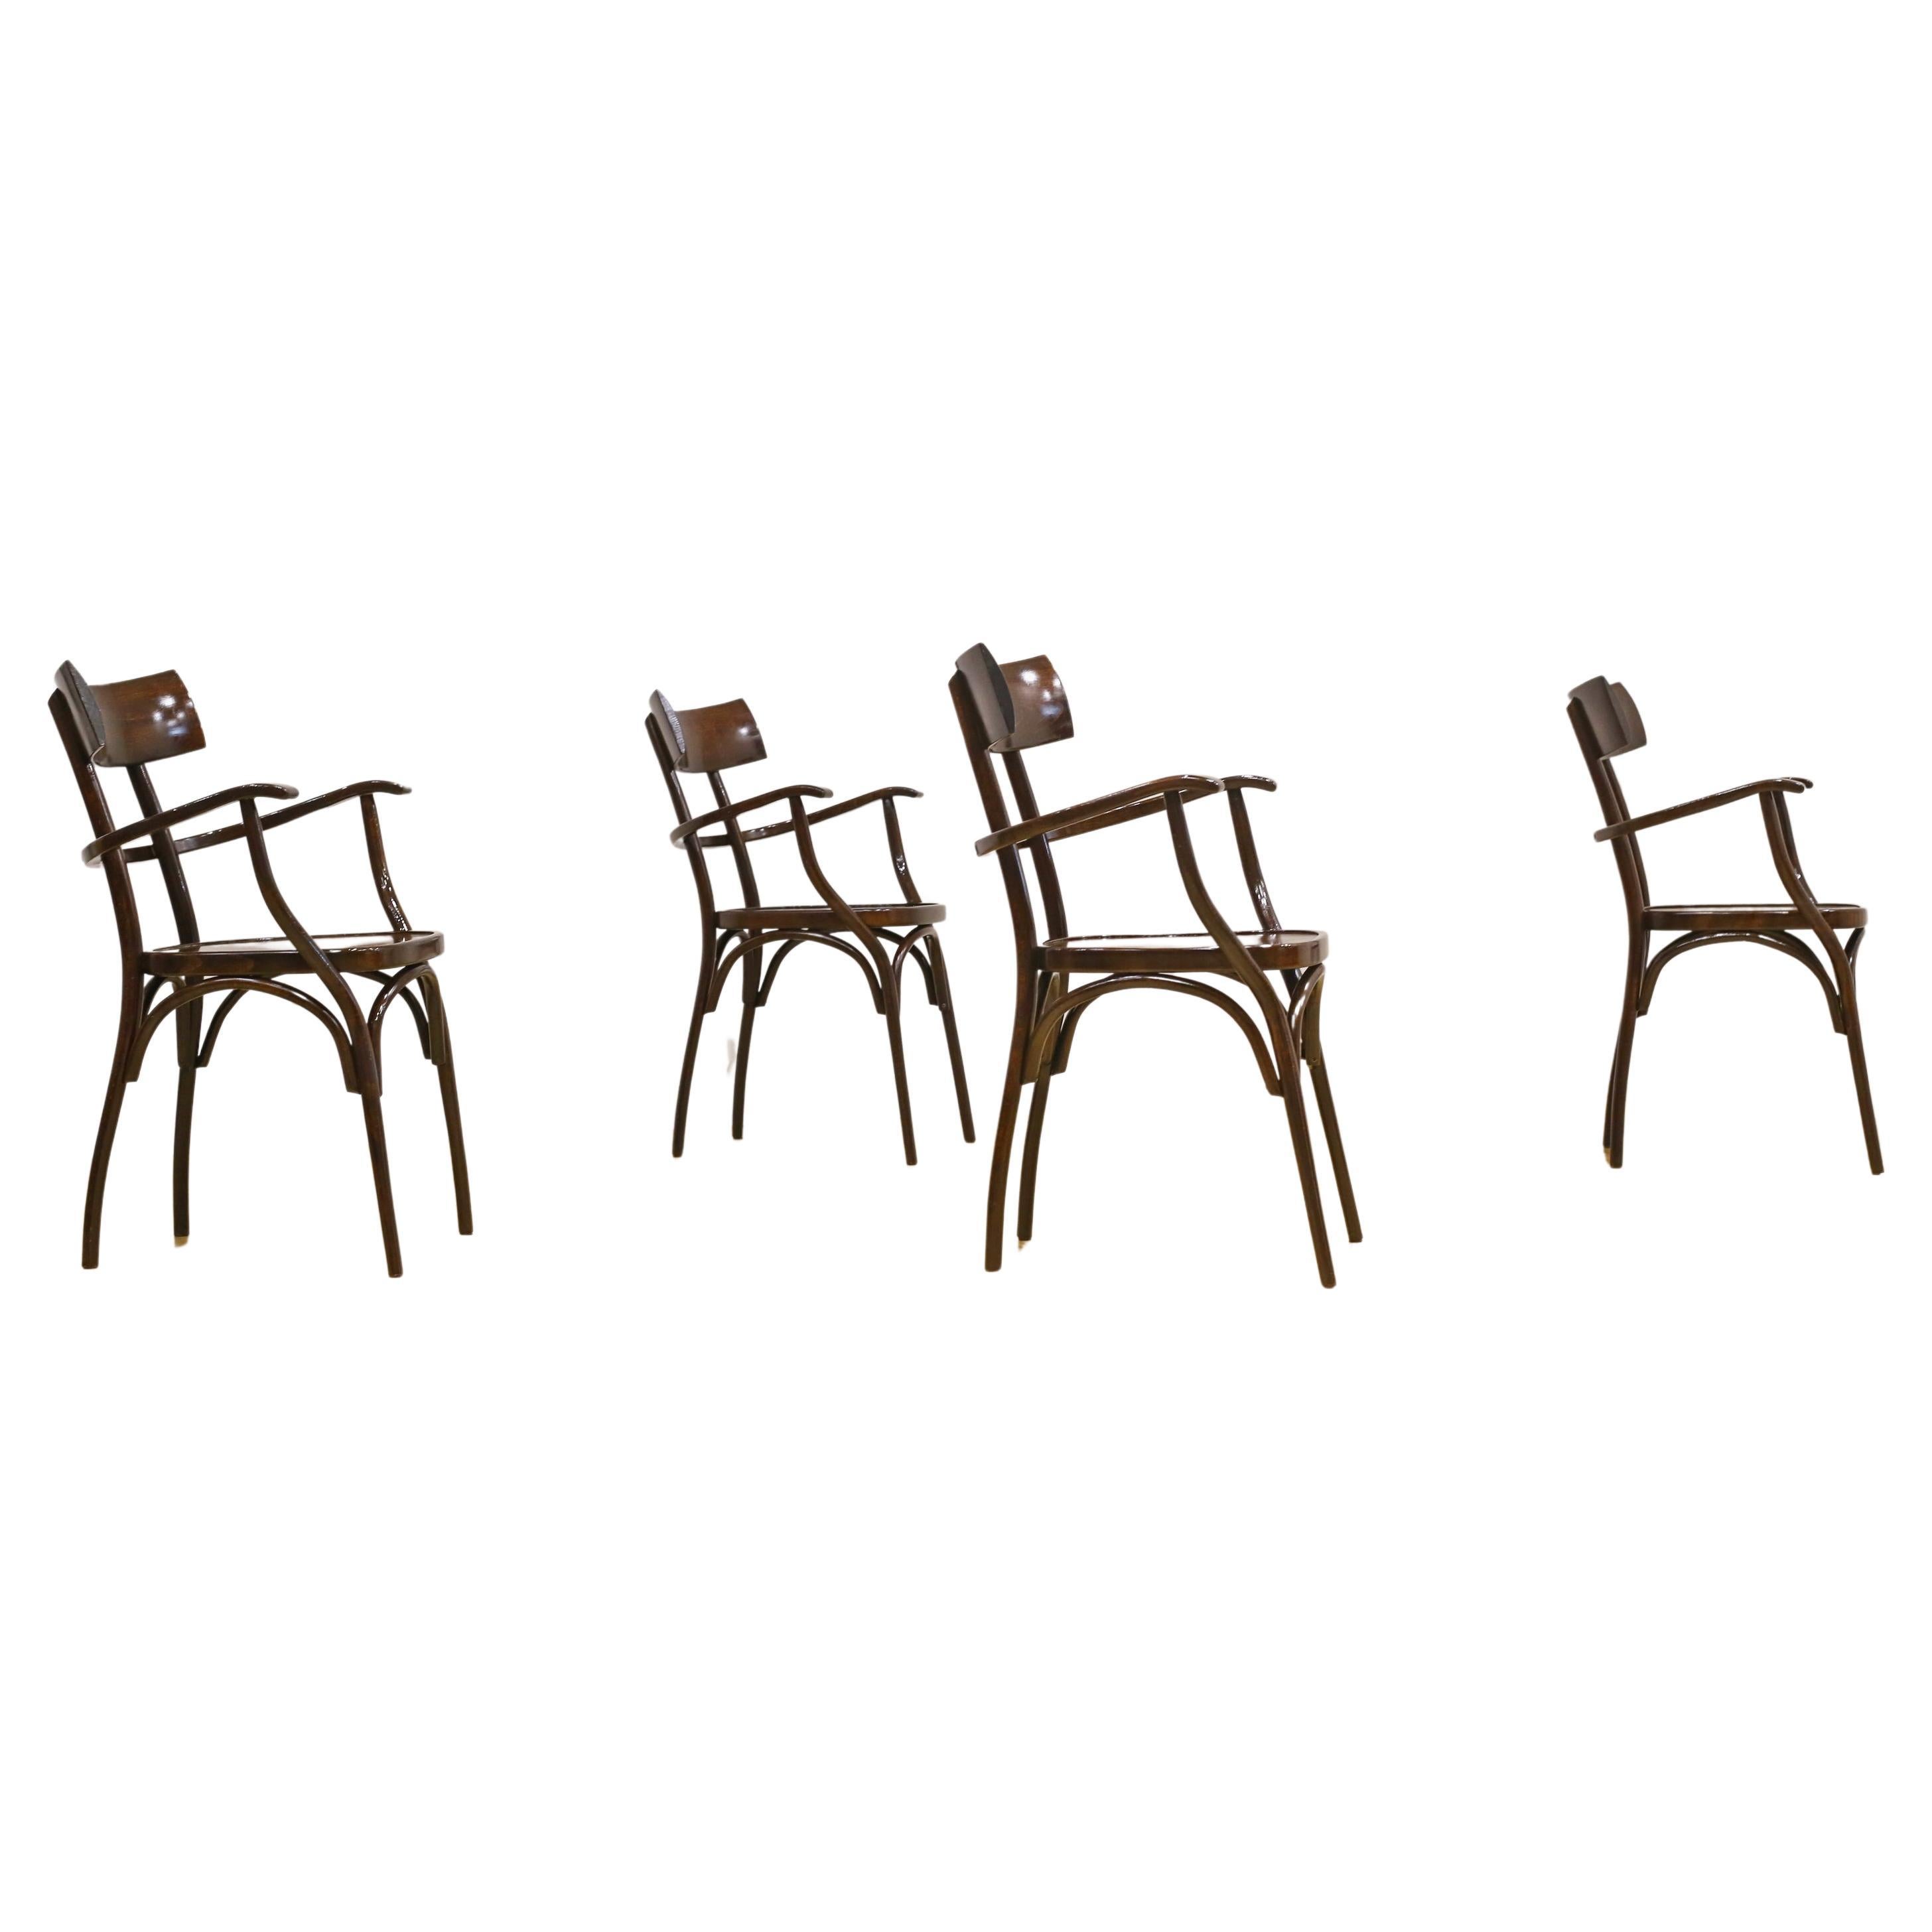 Vintage Hermann Black Chairs